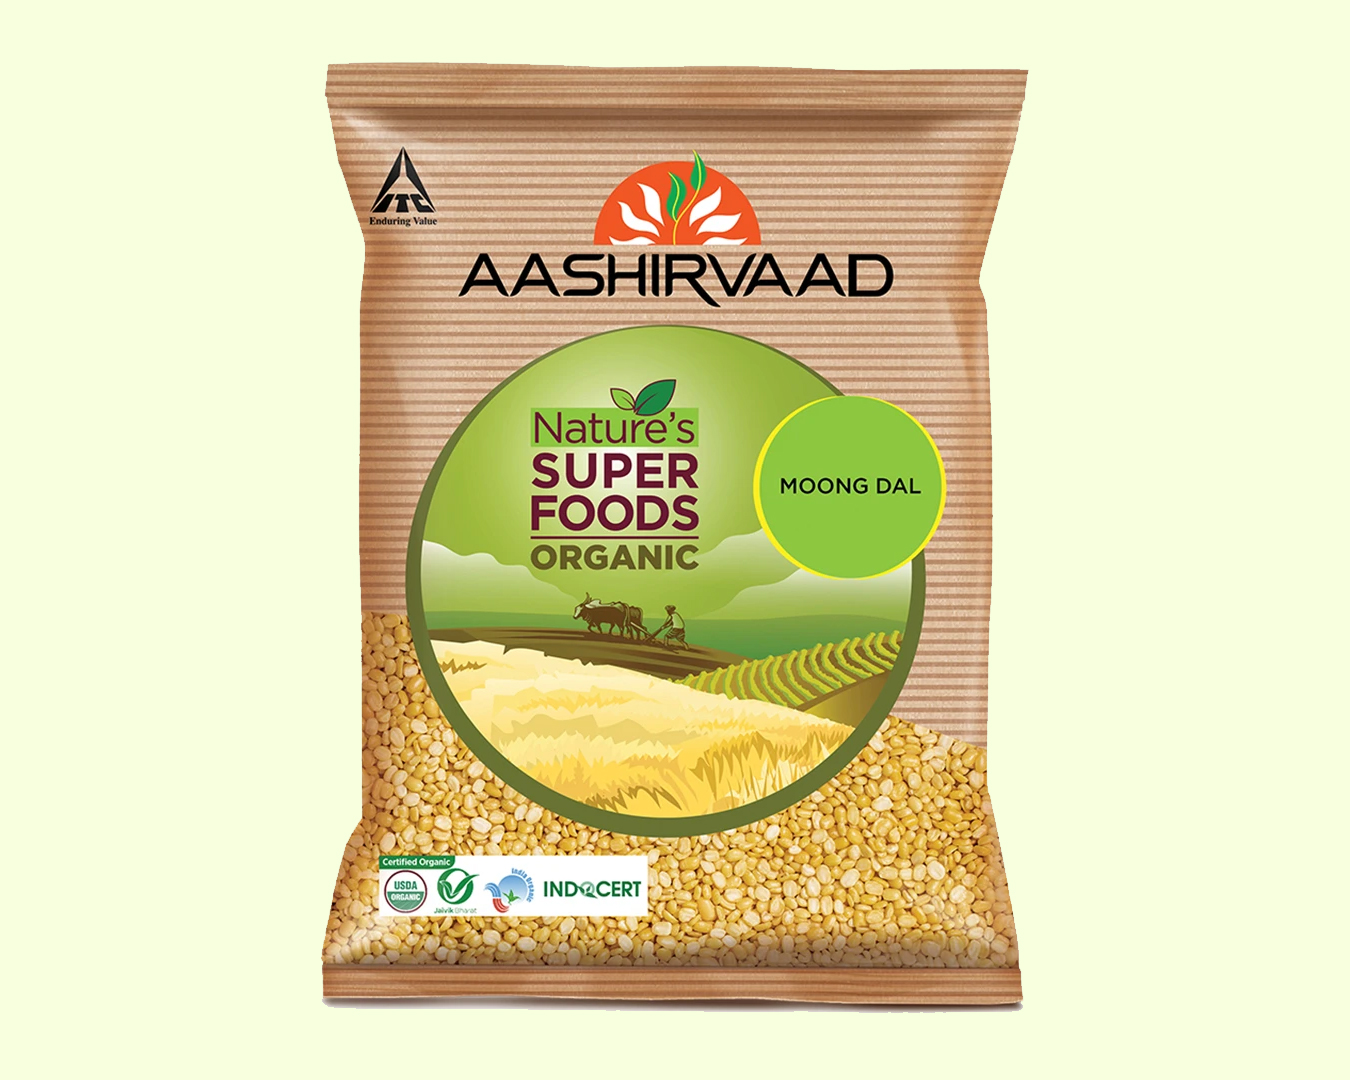 AASHIRVAAD NATURE'S SUPER FOODS ORGANIC